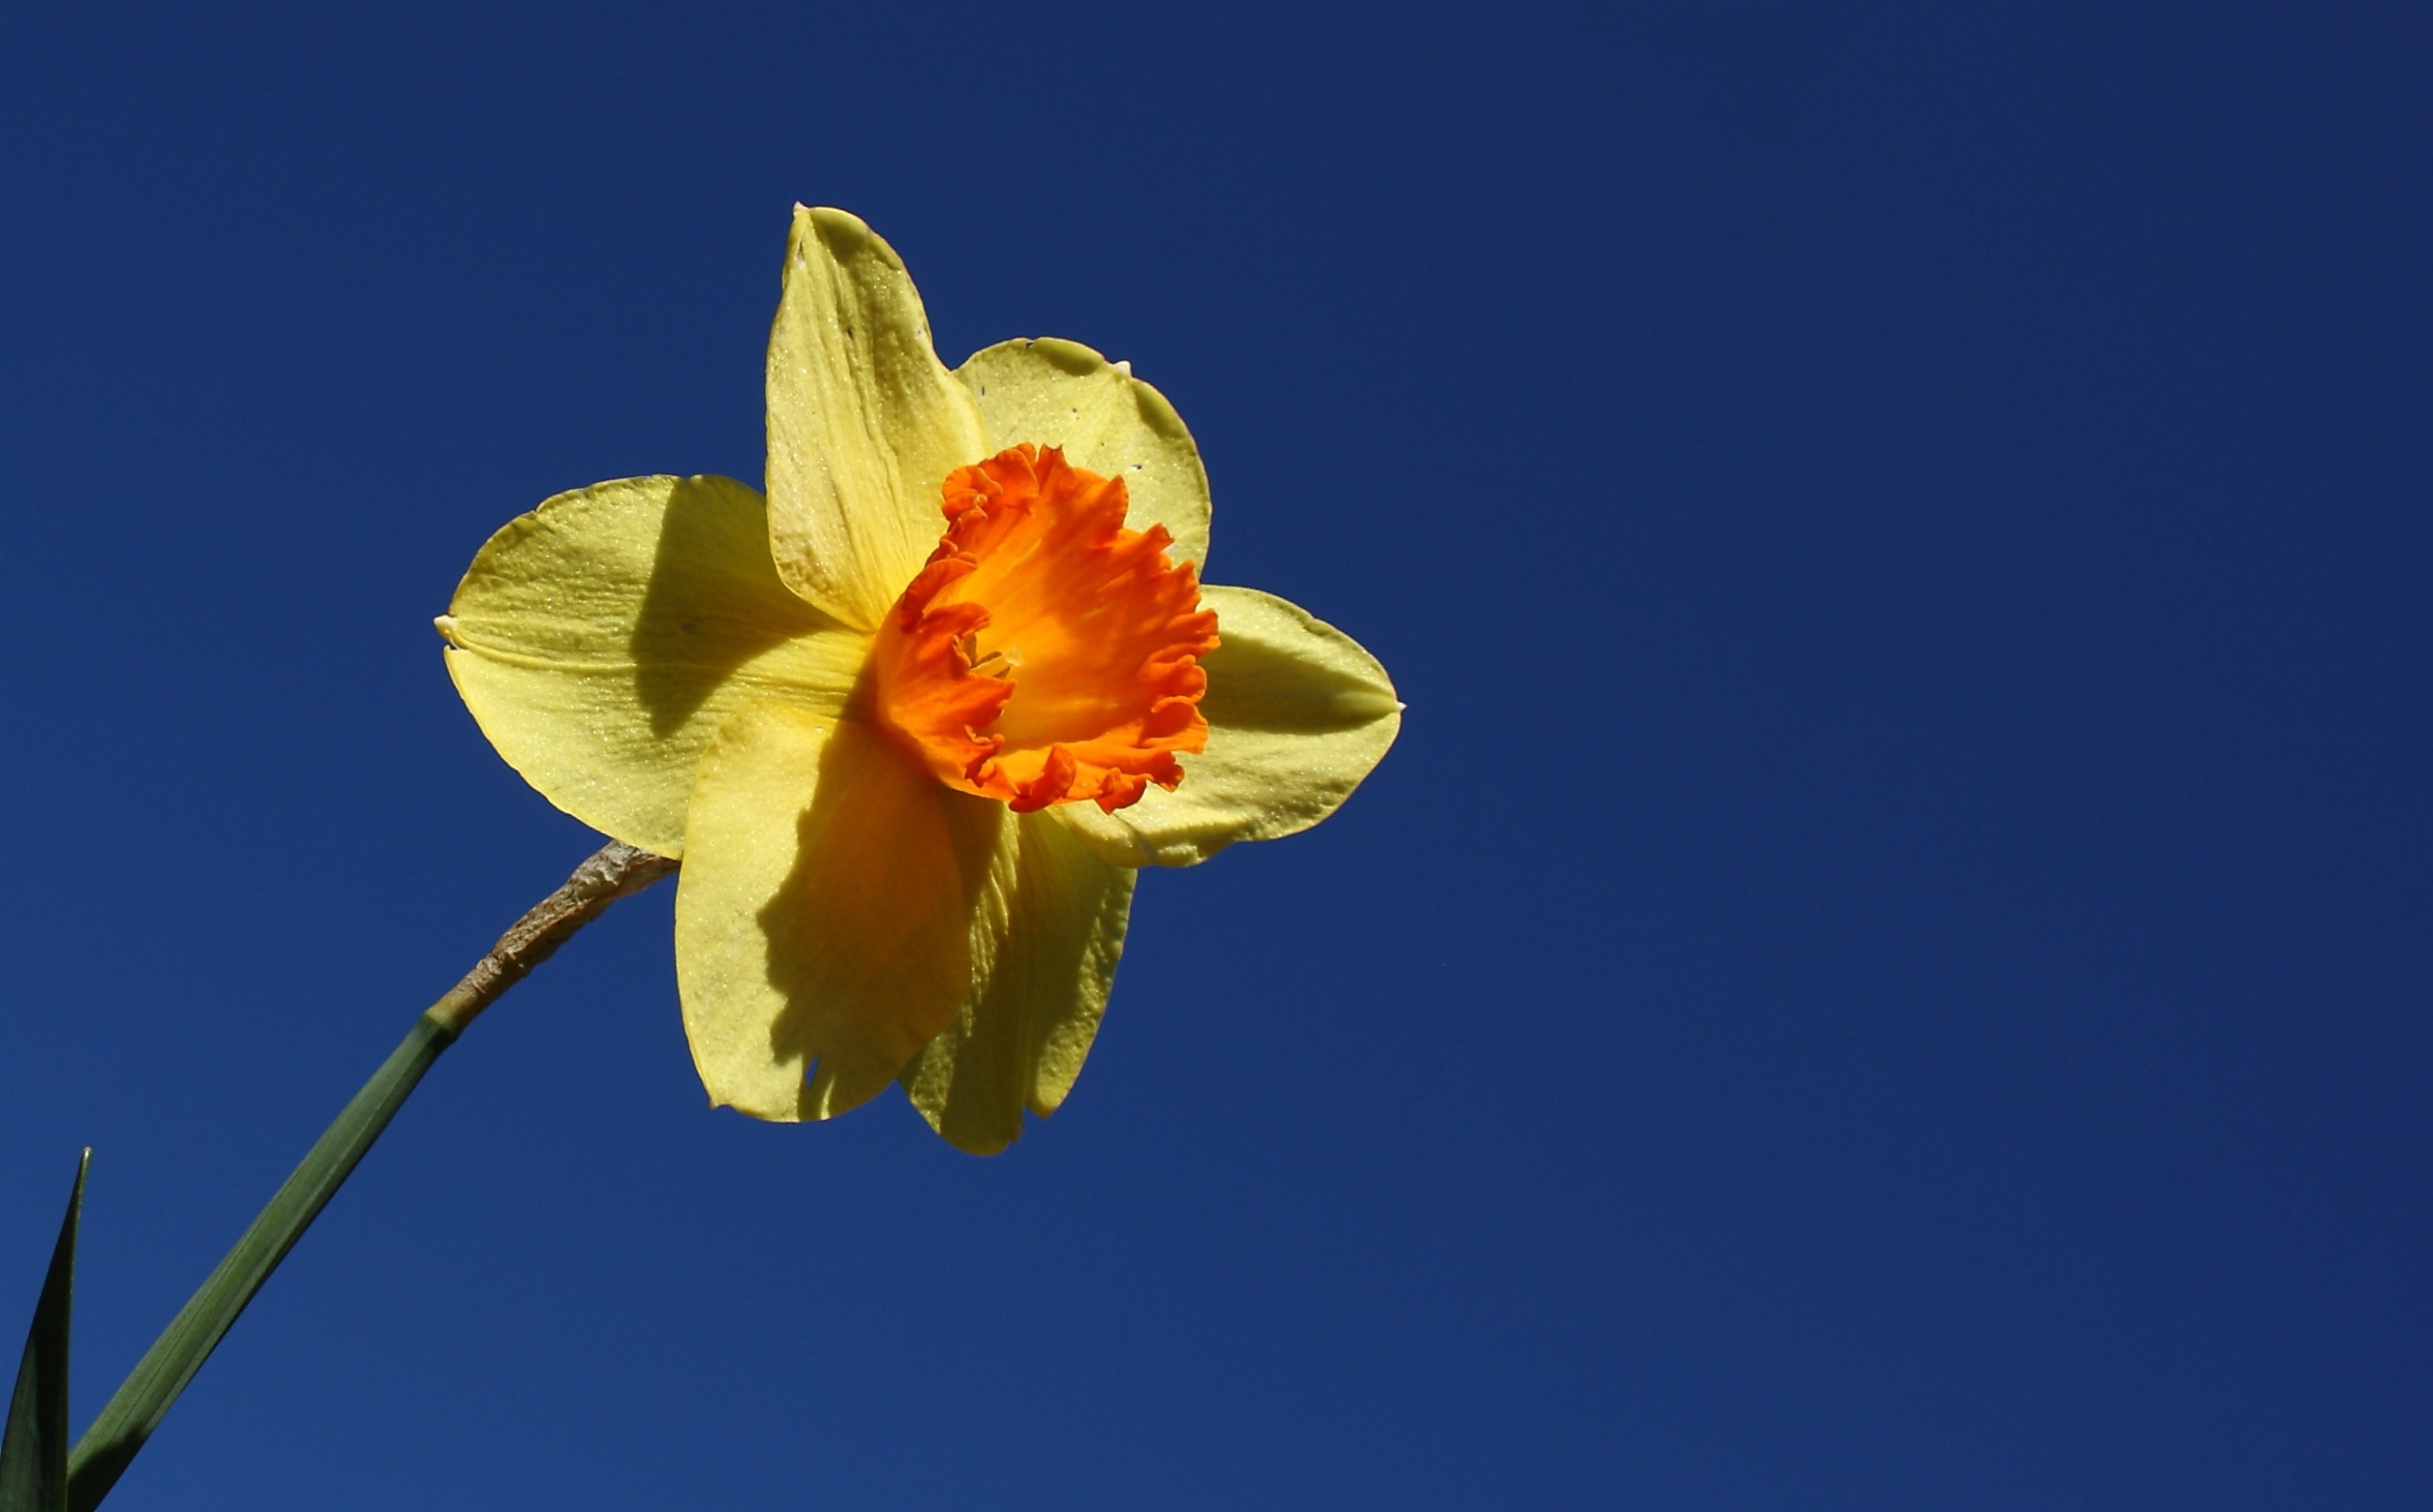 yellow and orange daffodil